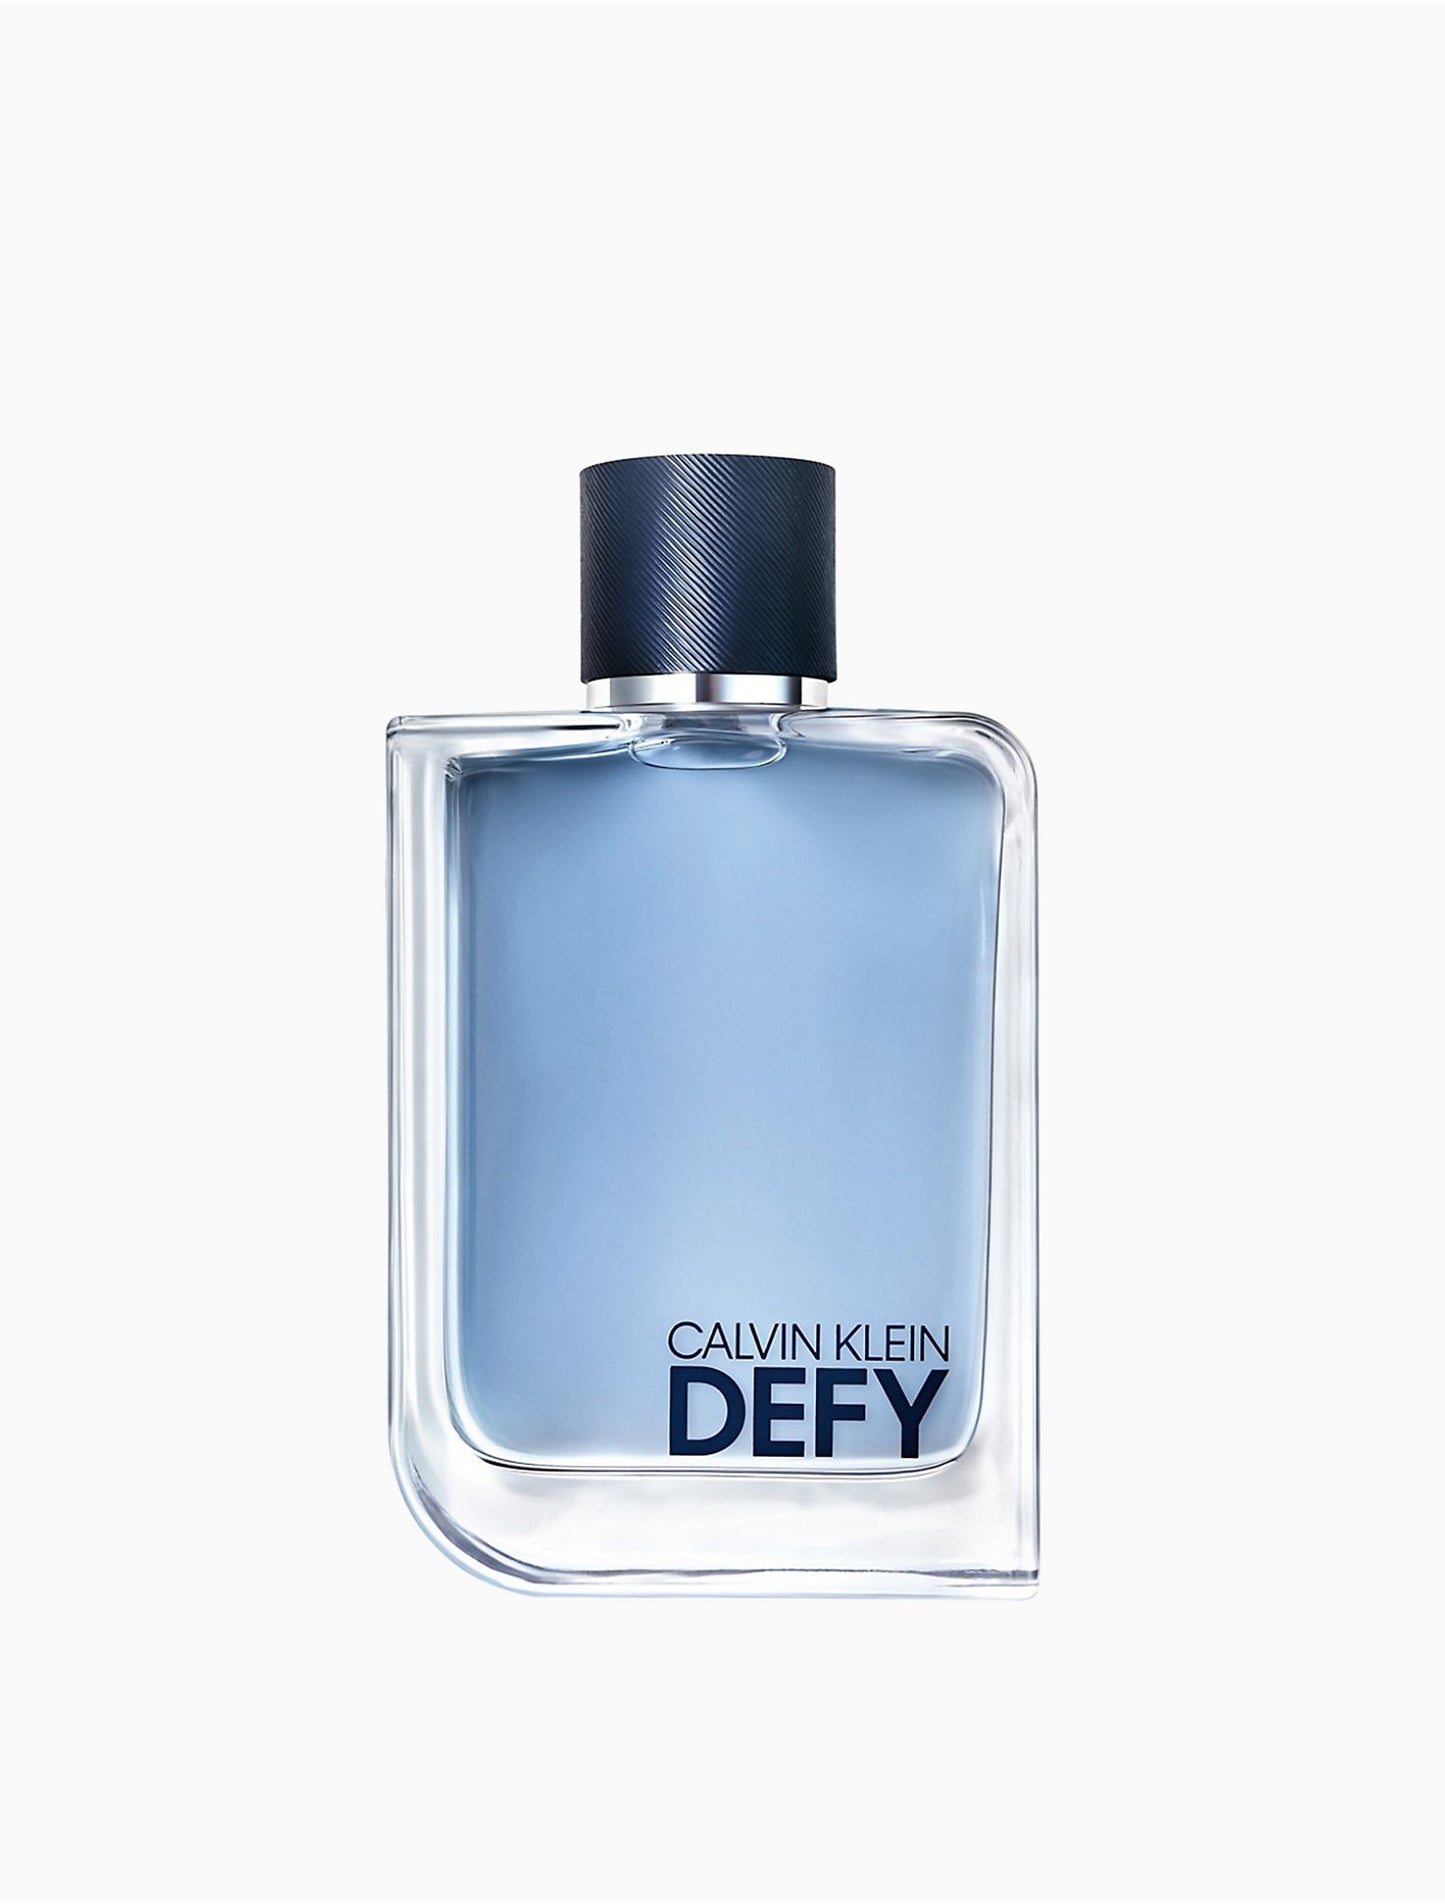 CK Defy Eau de Toilette for Men - Perfume Planet 